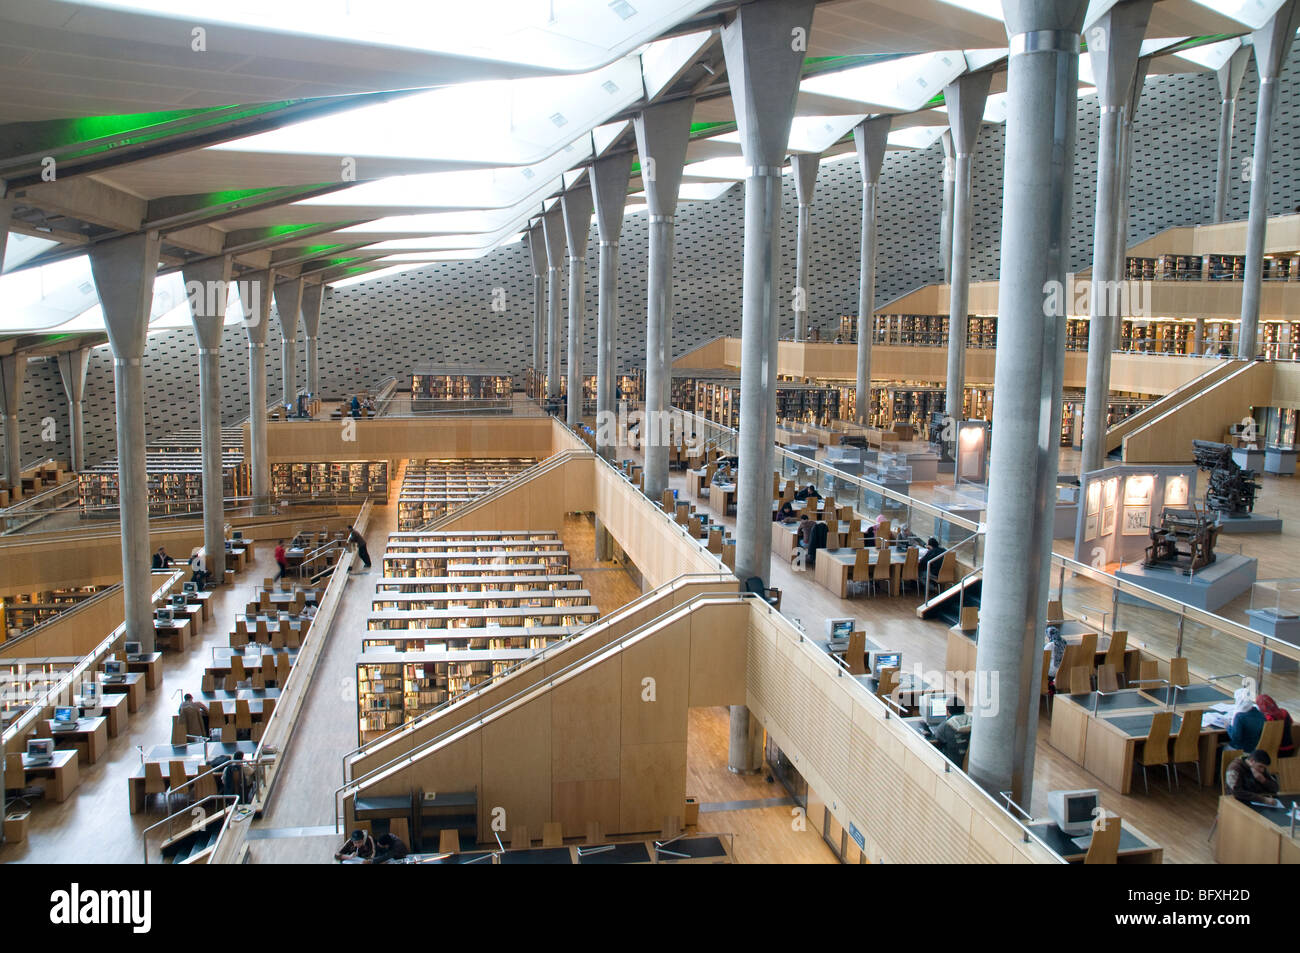 La Rotunda interiore della Bibliotheca Alexandrina libreria, un centro culturale e una delle più grandi biblioteche nel Medio Oriente, in Alessandria, Egitto. Foto Stock